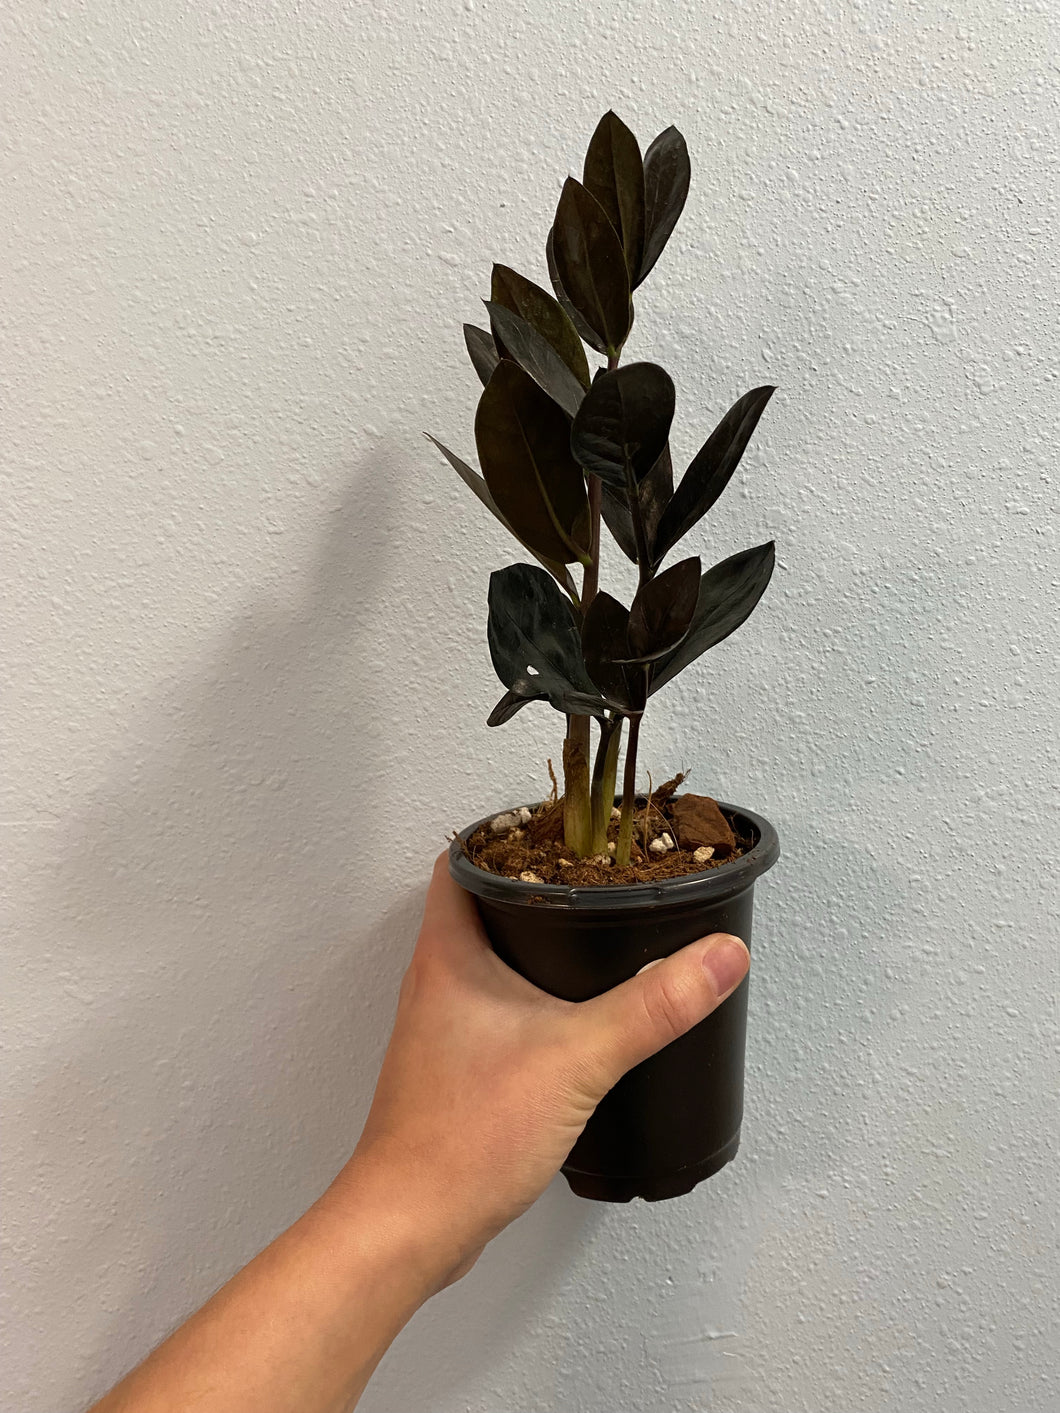 Black ZZ plant / Zamioculcas Zamiifolia Dark Form